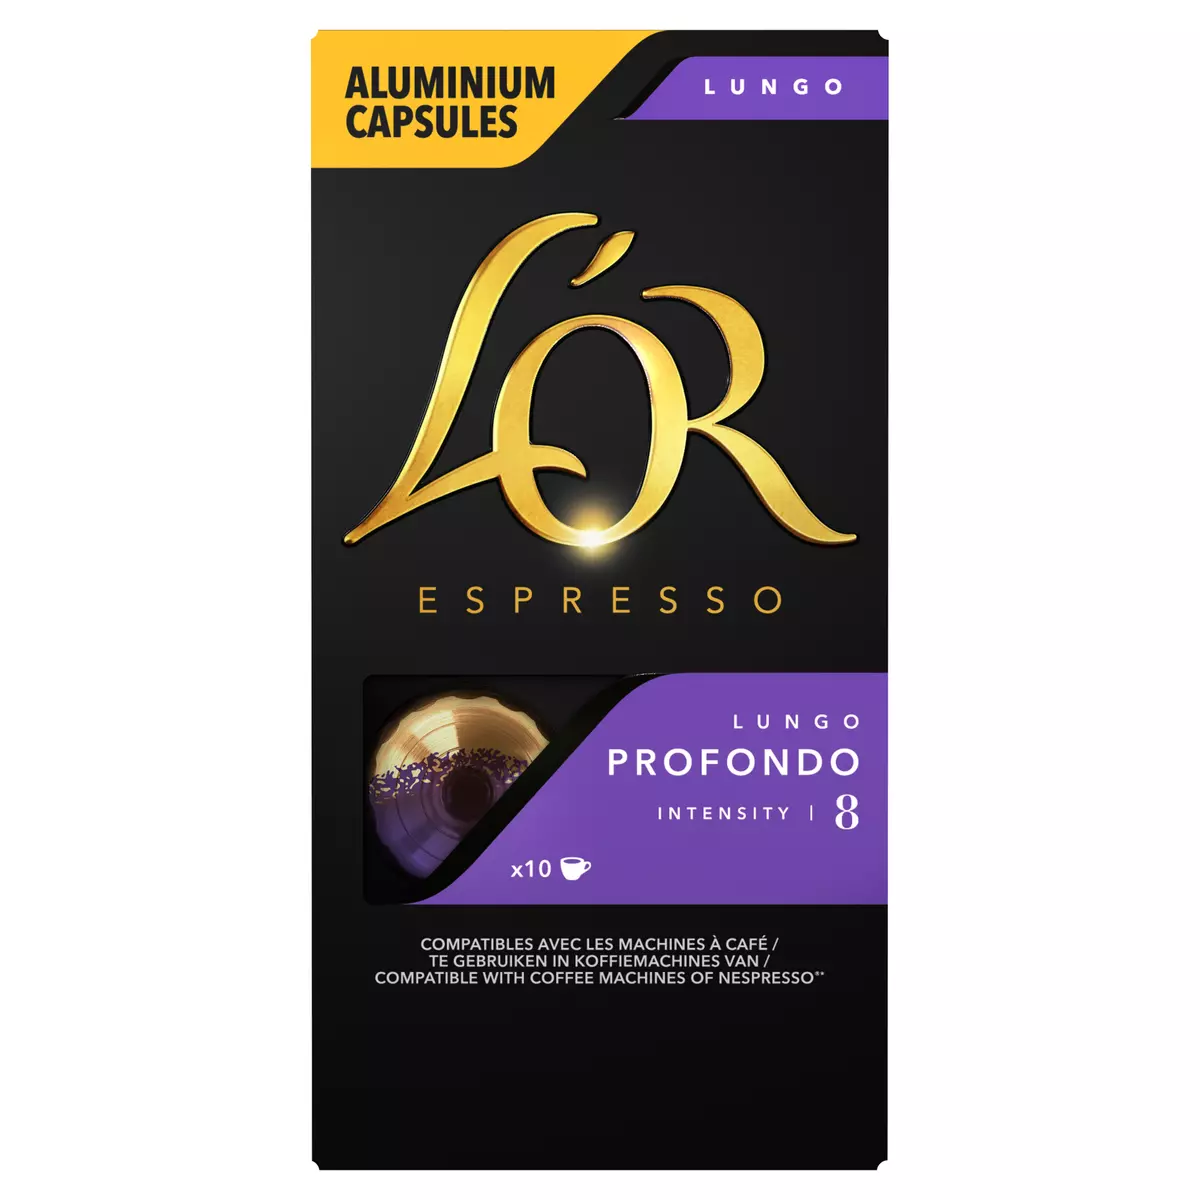 L'OR ESPRESSO Café lungo profondo en capsule aluminium pour Nespresso 10 capsules 52g